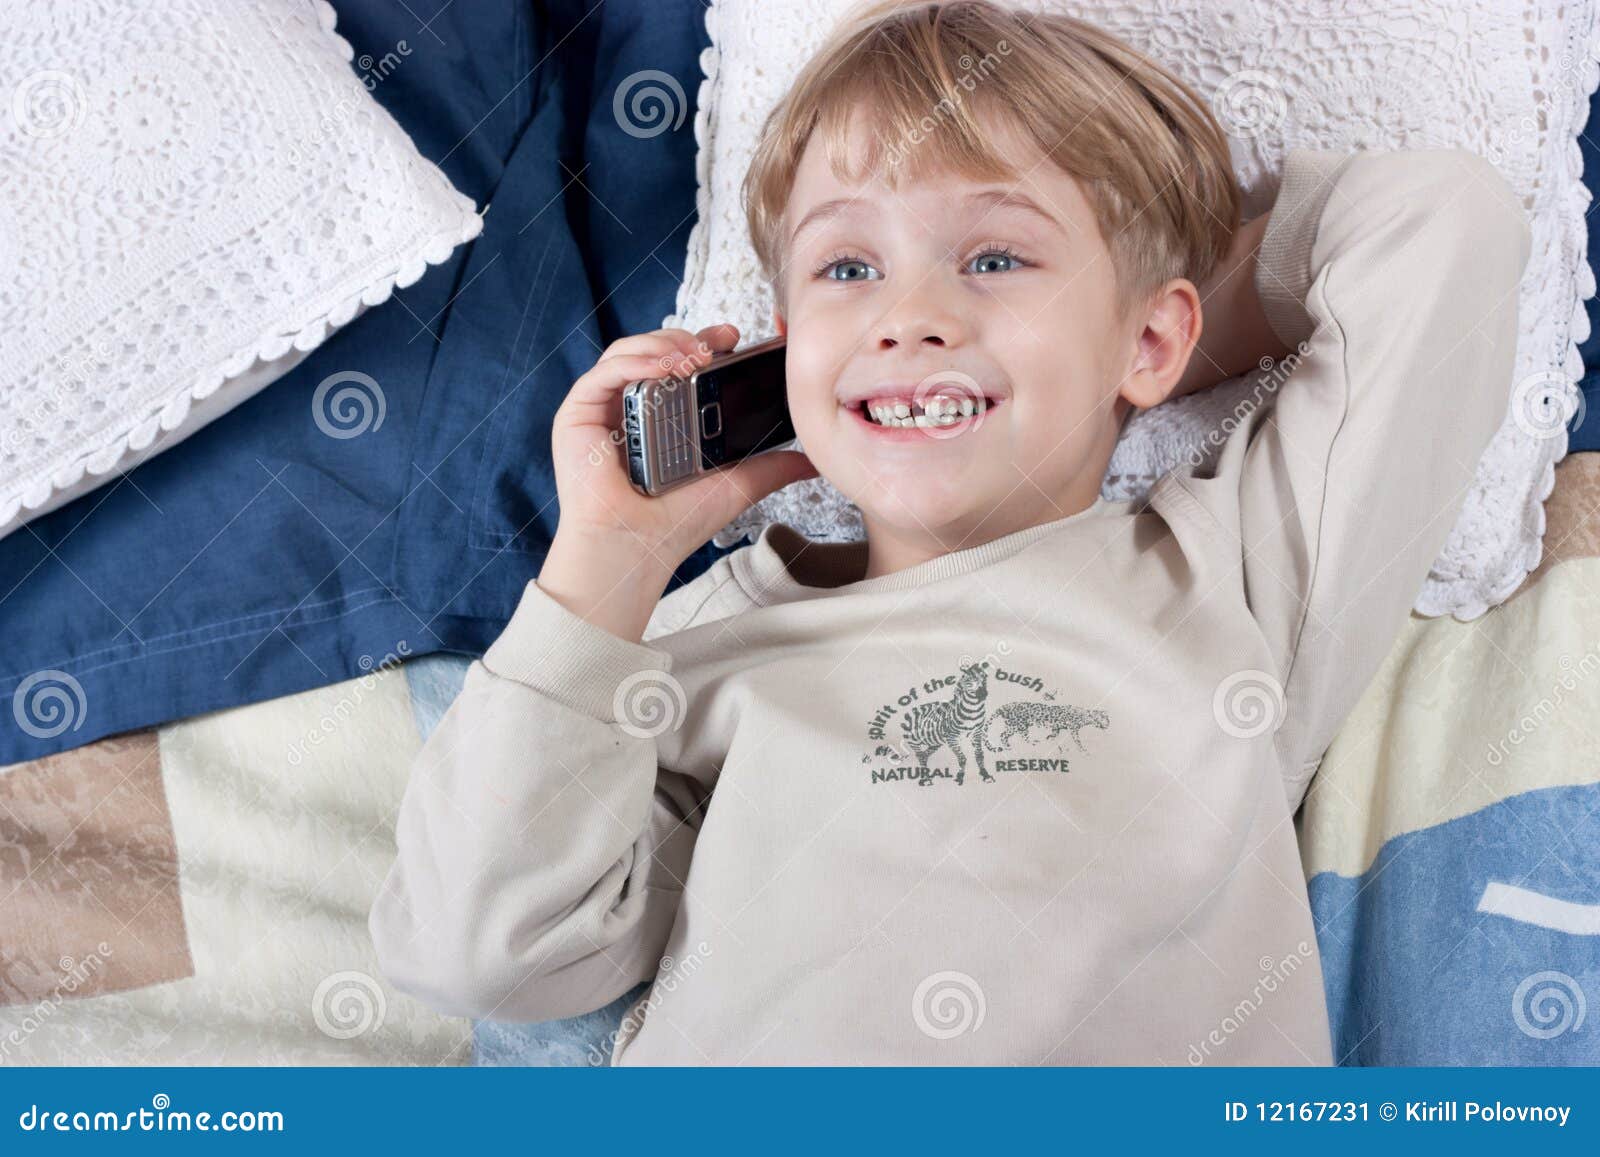 Включи телефон мальчик. Мальчик с телефоном. Мальчик в телефоне милые. Картинка мальчик с телефоном в руках. Телефоны мальчику сецерные.